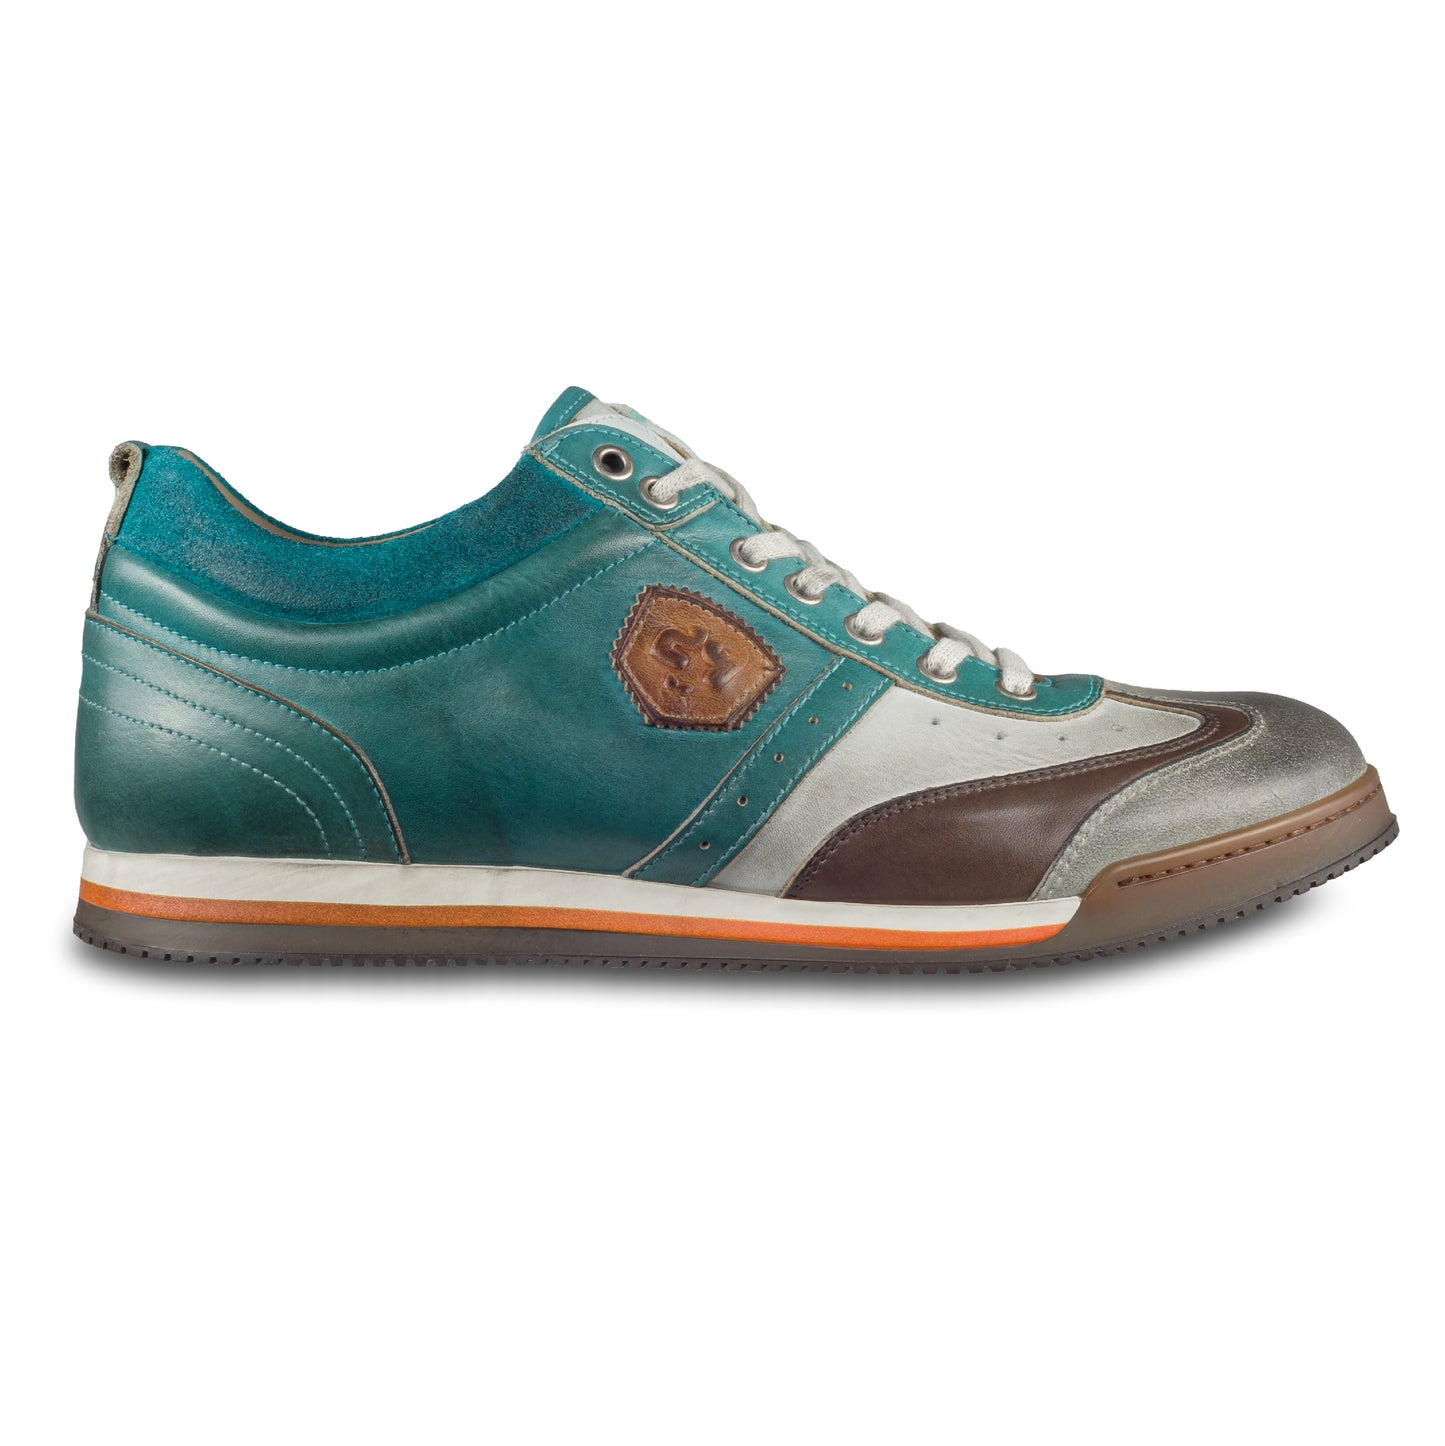 KAMO-GUTSU Herren Leder Sneaker türkis blau / weiß / braun / grau, Retro-Optik. Modell SCUDO-005 sugar combi. Handgefertigt in Italien. Ansicht der Außenseite rechter Schuh. 